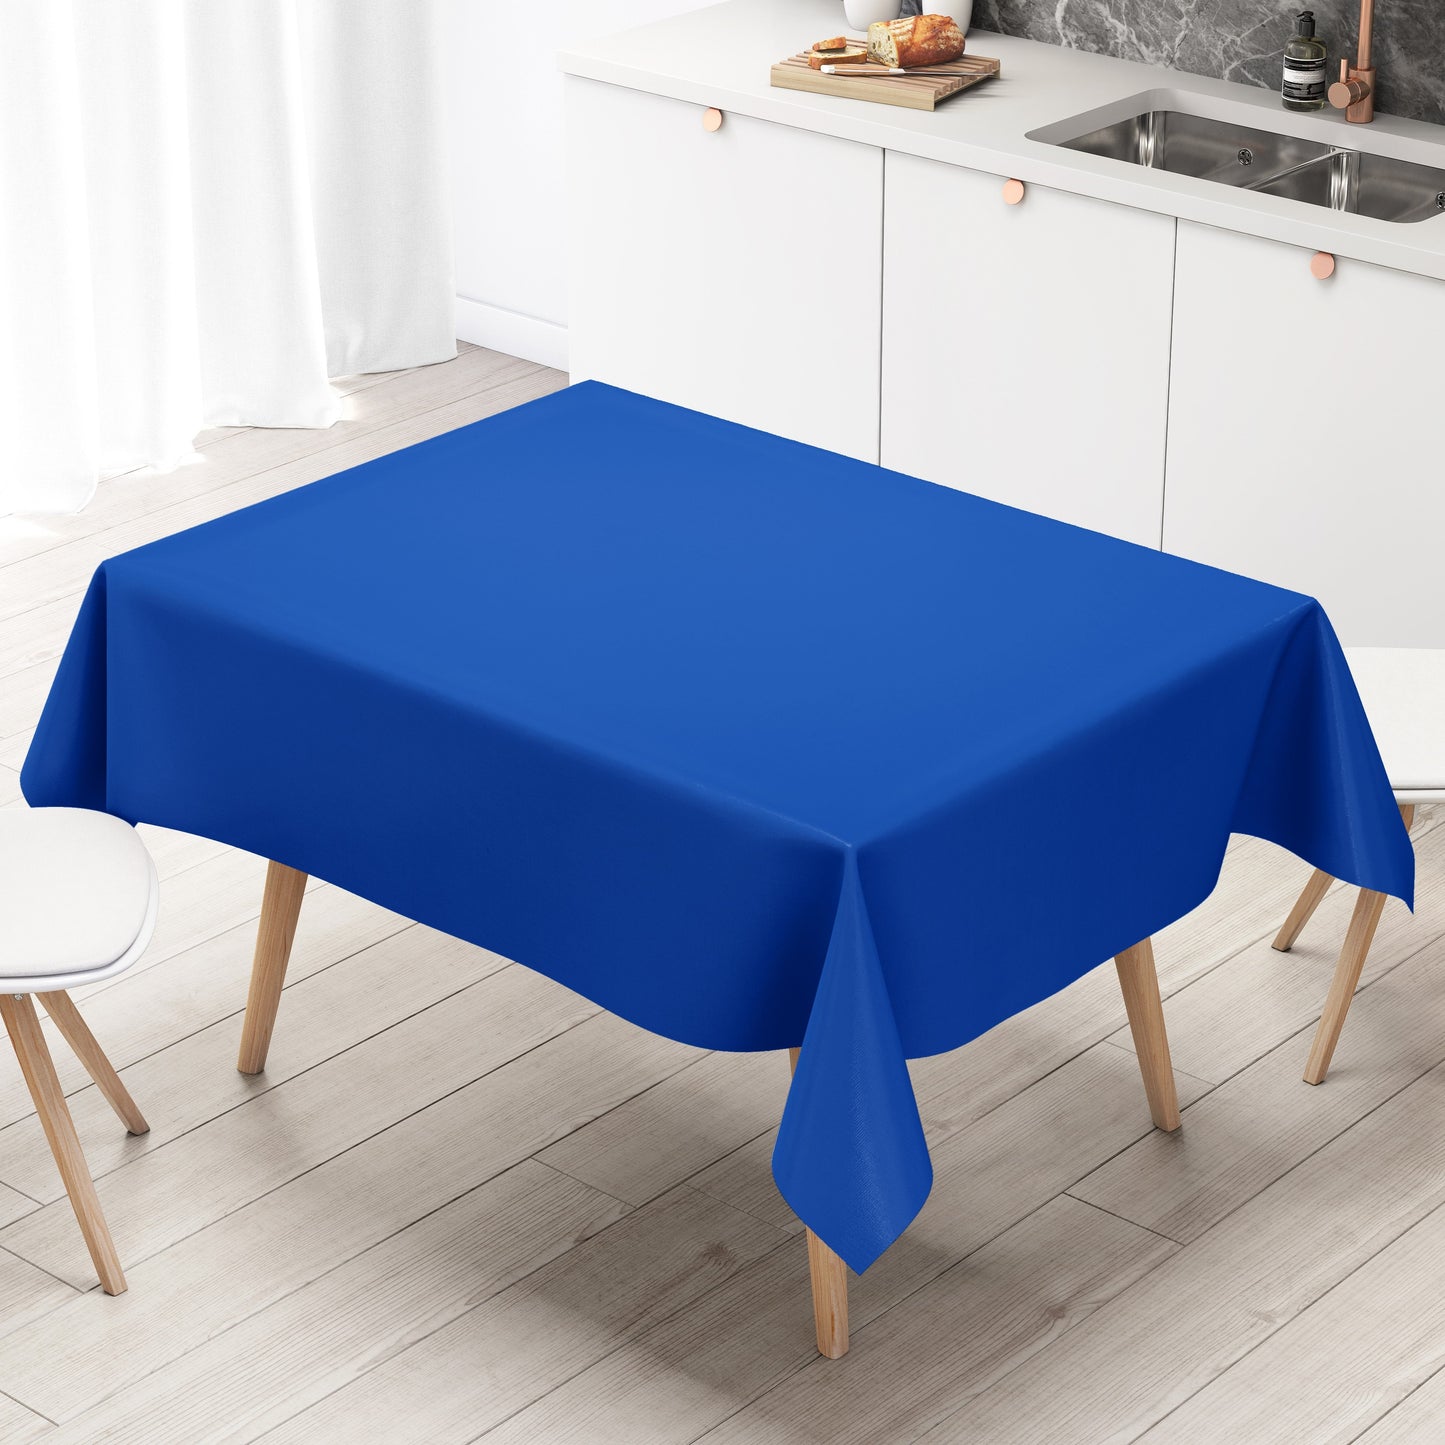 KEVKUS Wachstuch Tischdecke uni 295 blau royalblau einfarbig wählbar in eckig, rund und oval -